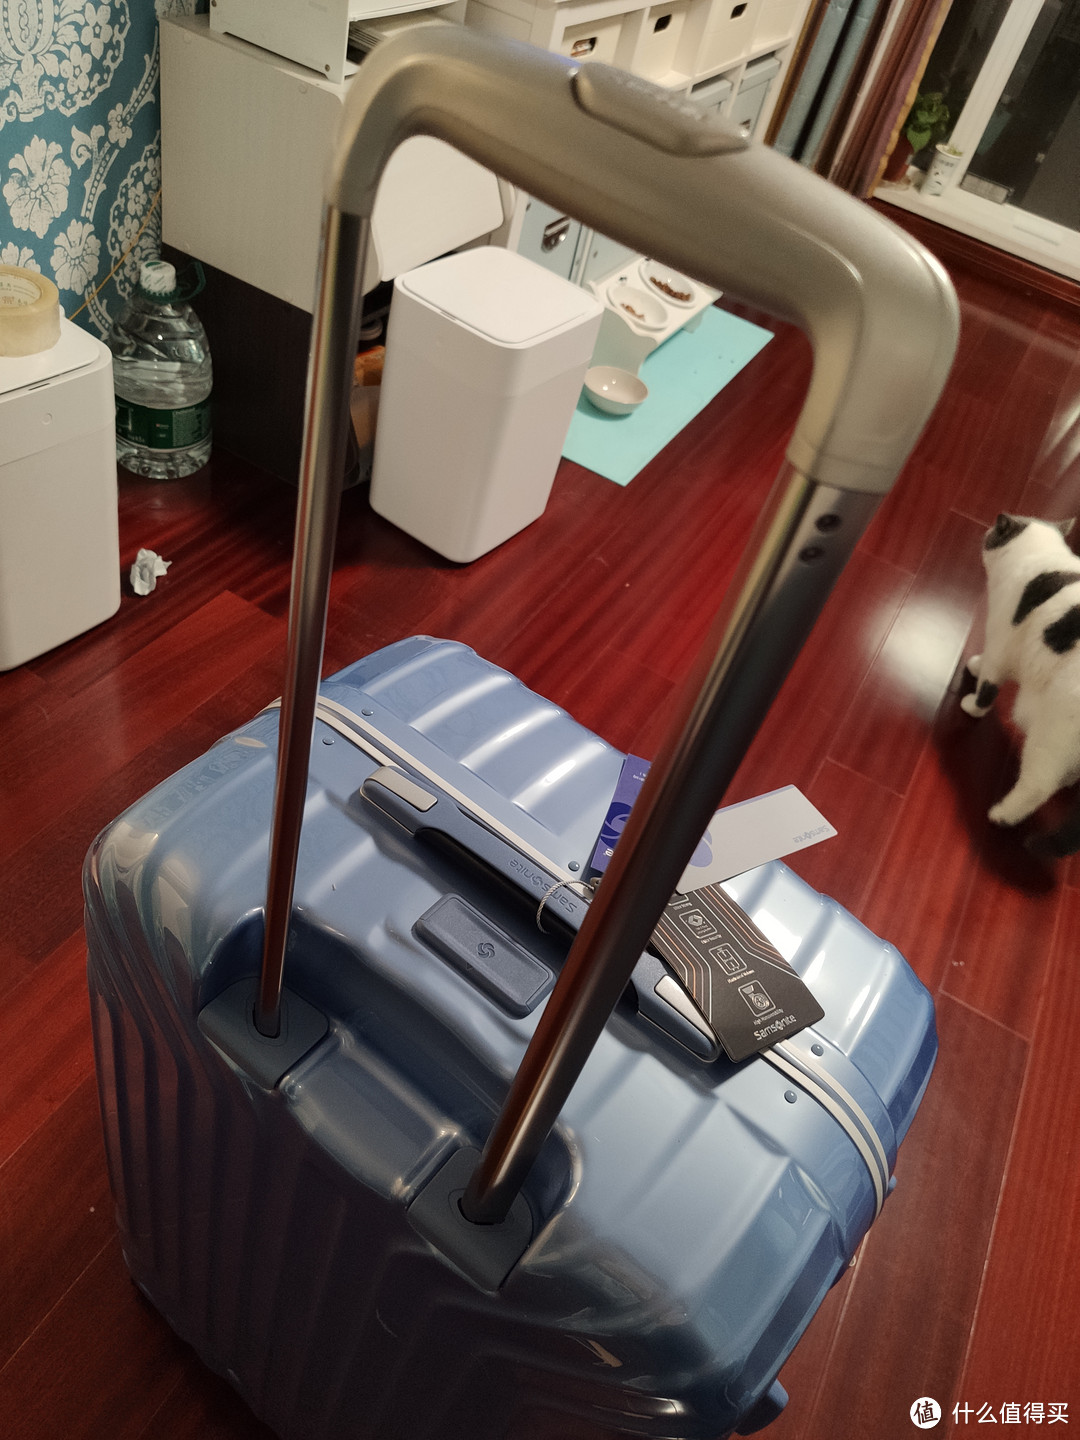 带我去旅行 新秀丽铝框行李箱